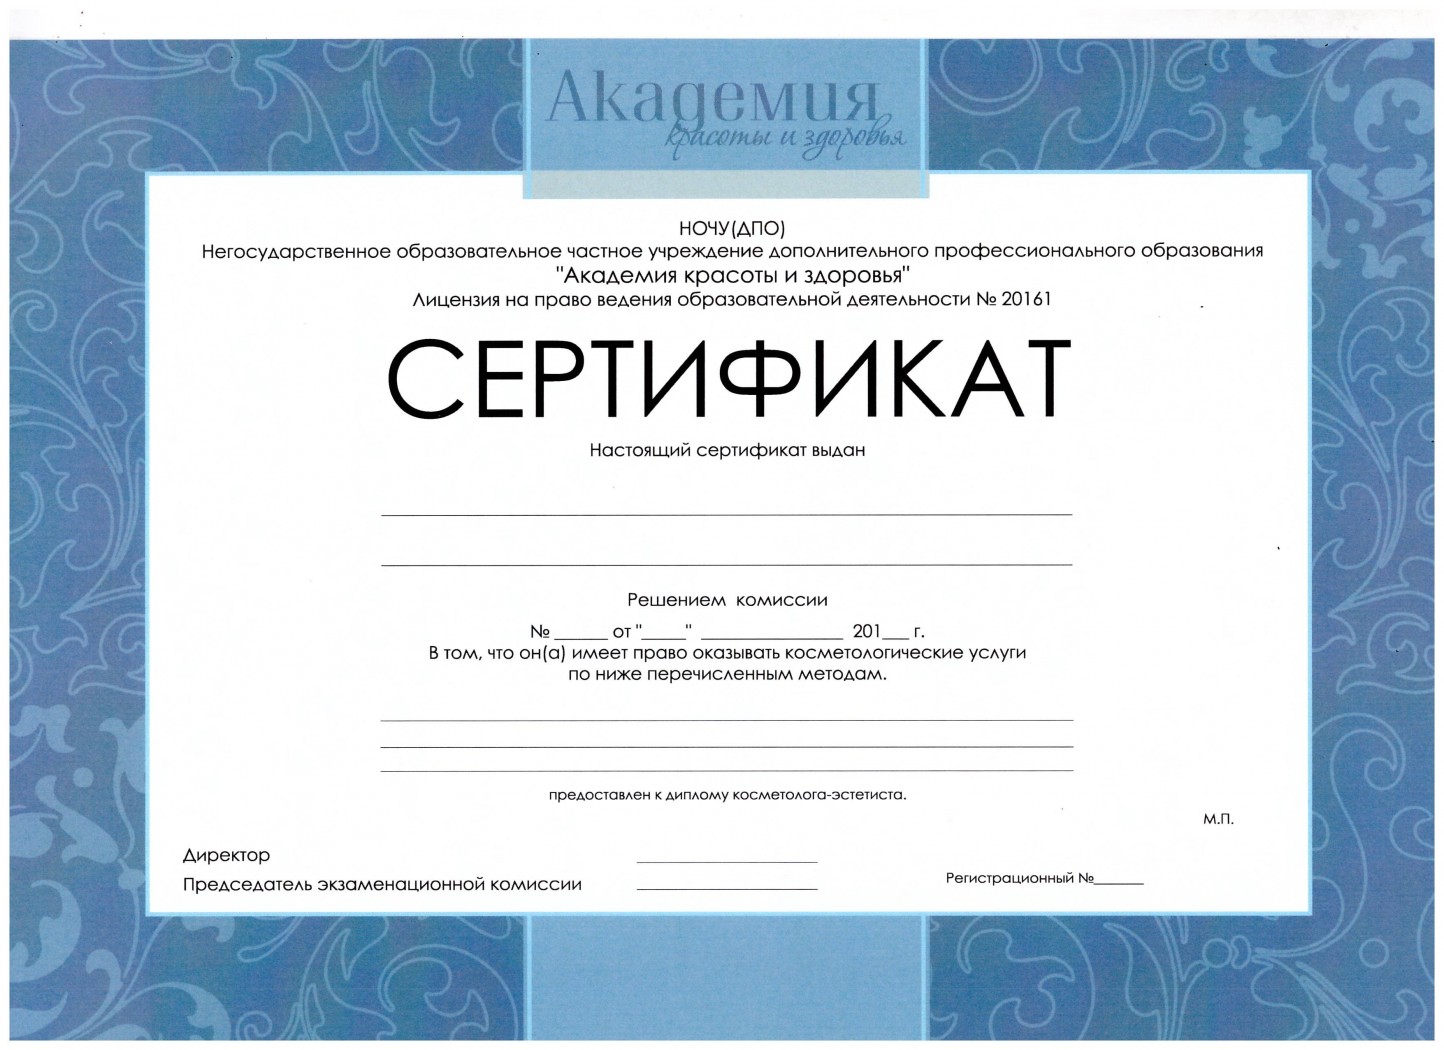 Макеты сертификатов на обучение